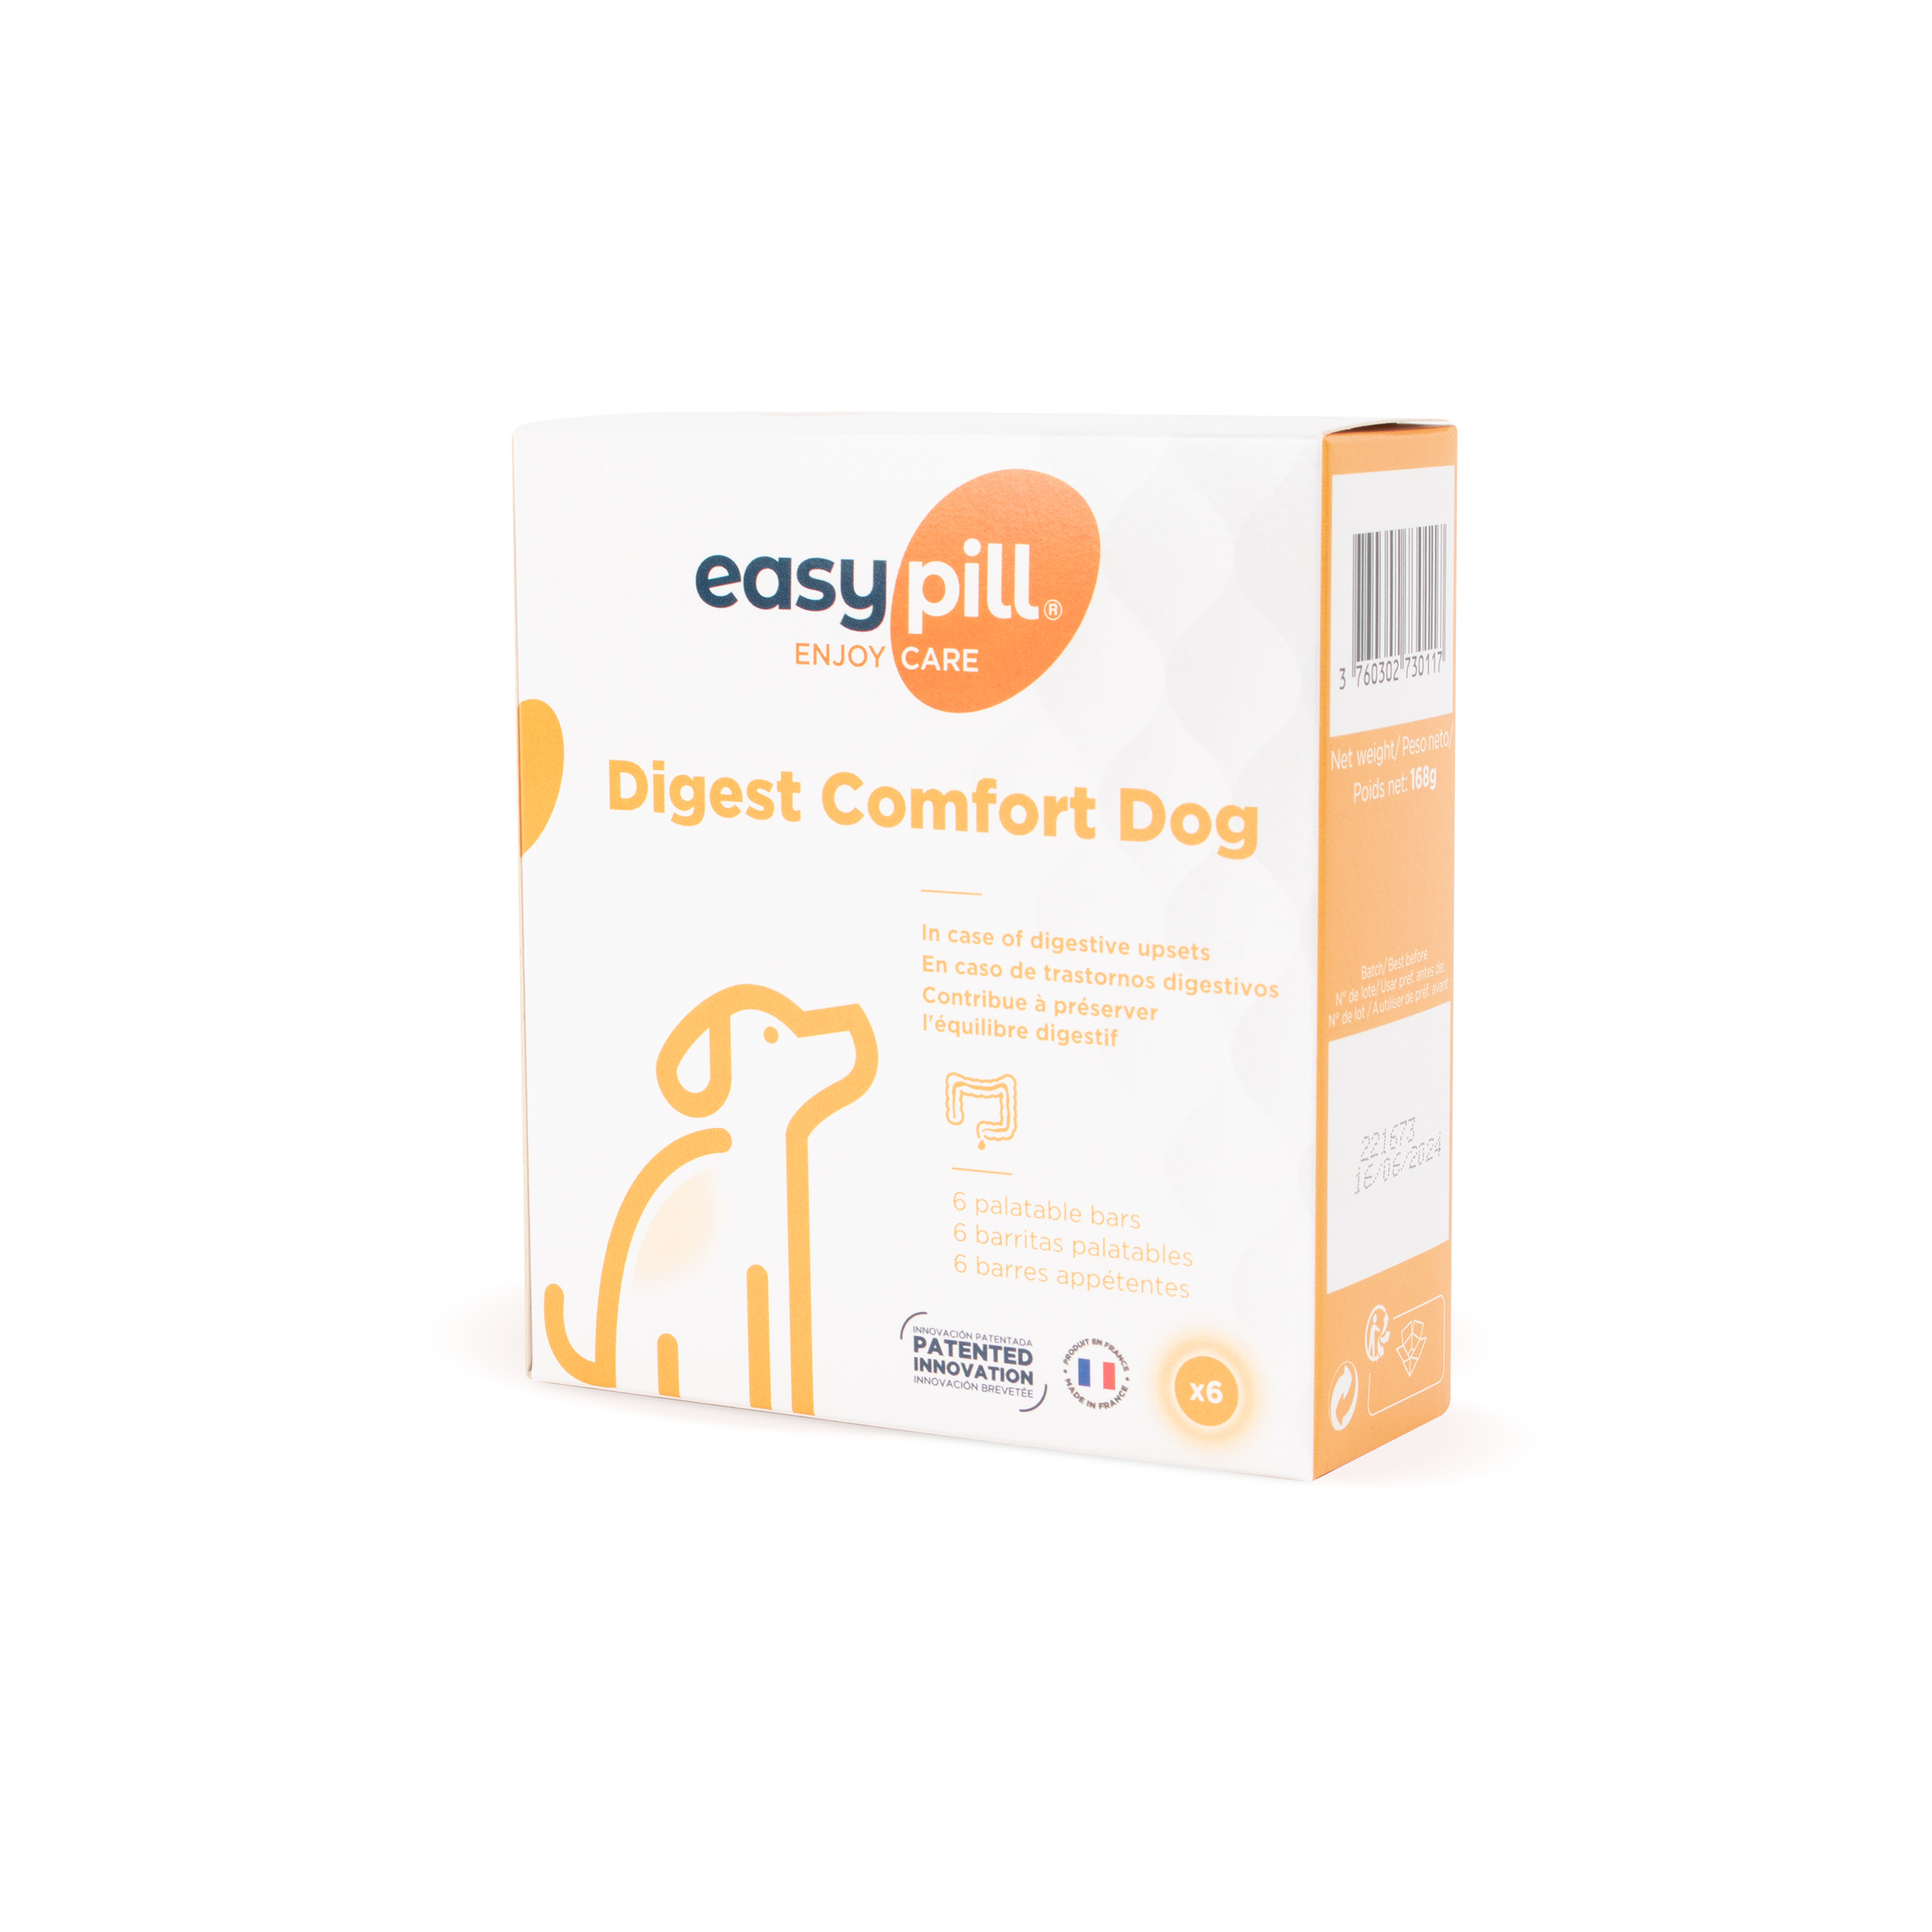 Easypill Smectite chien barres appétentes - Diarrhée - Digestion